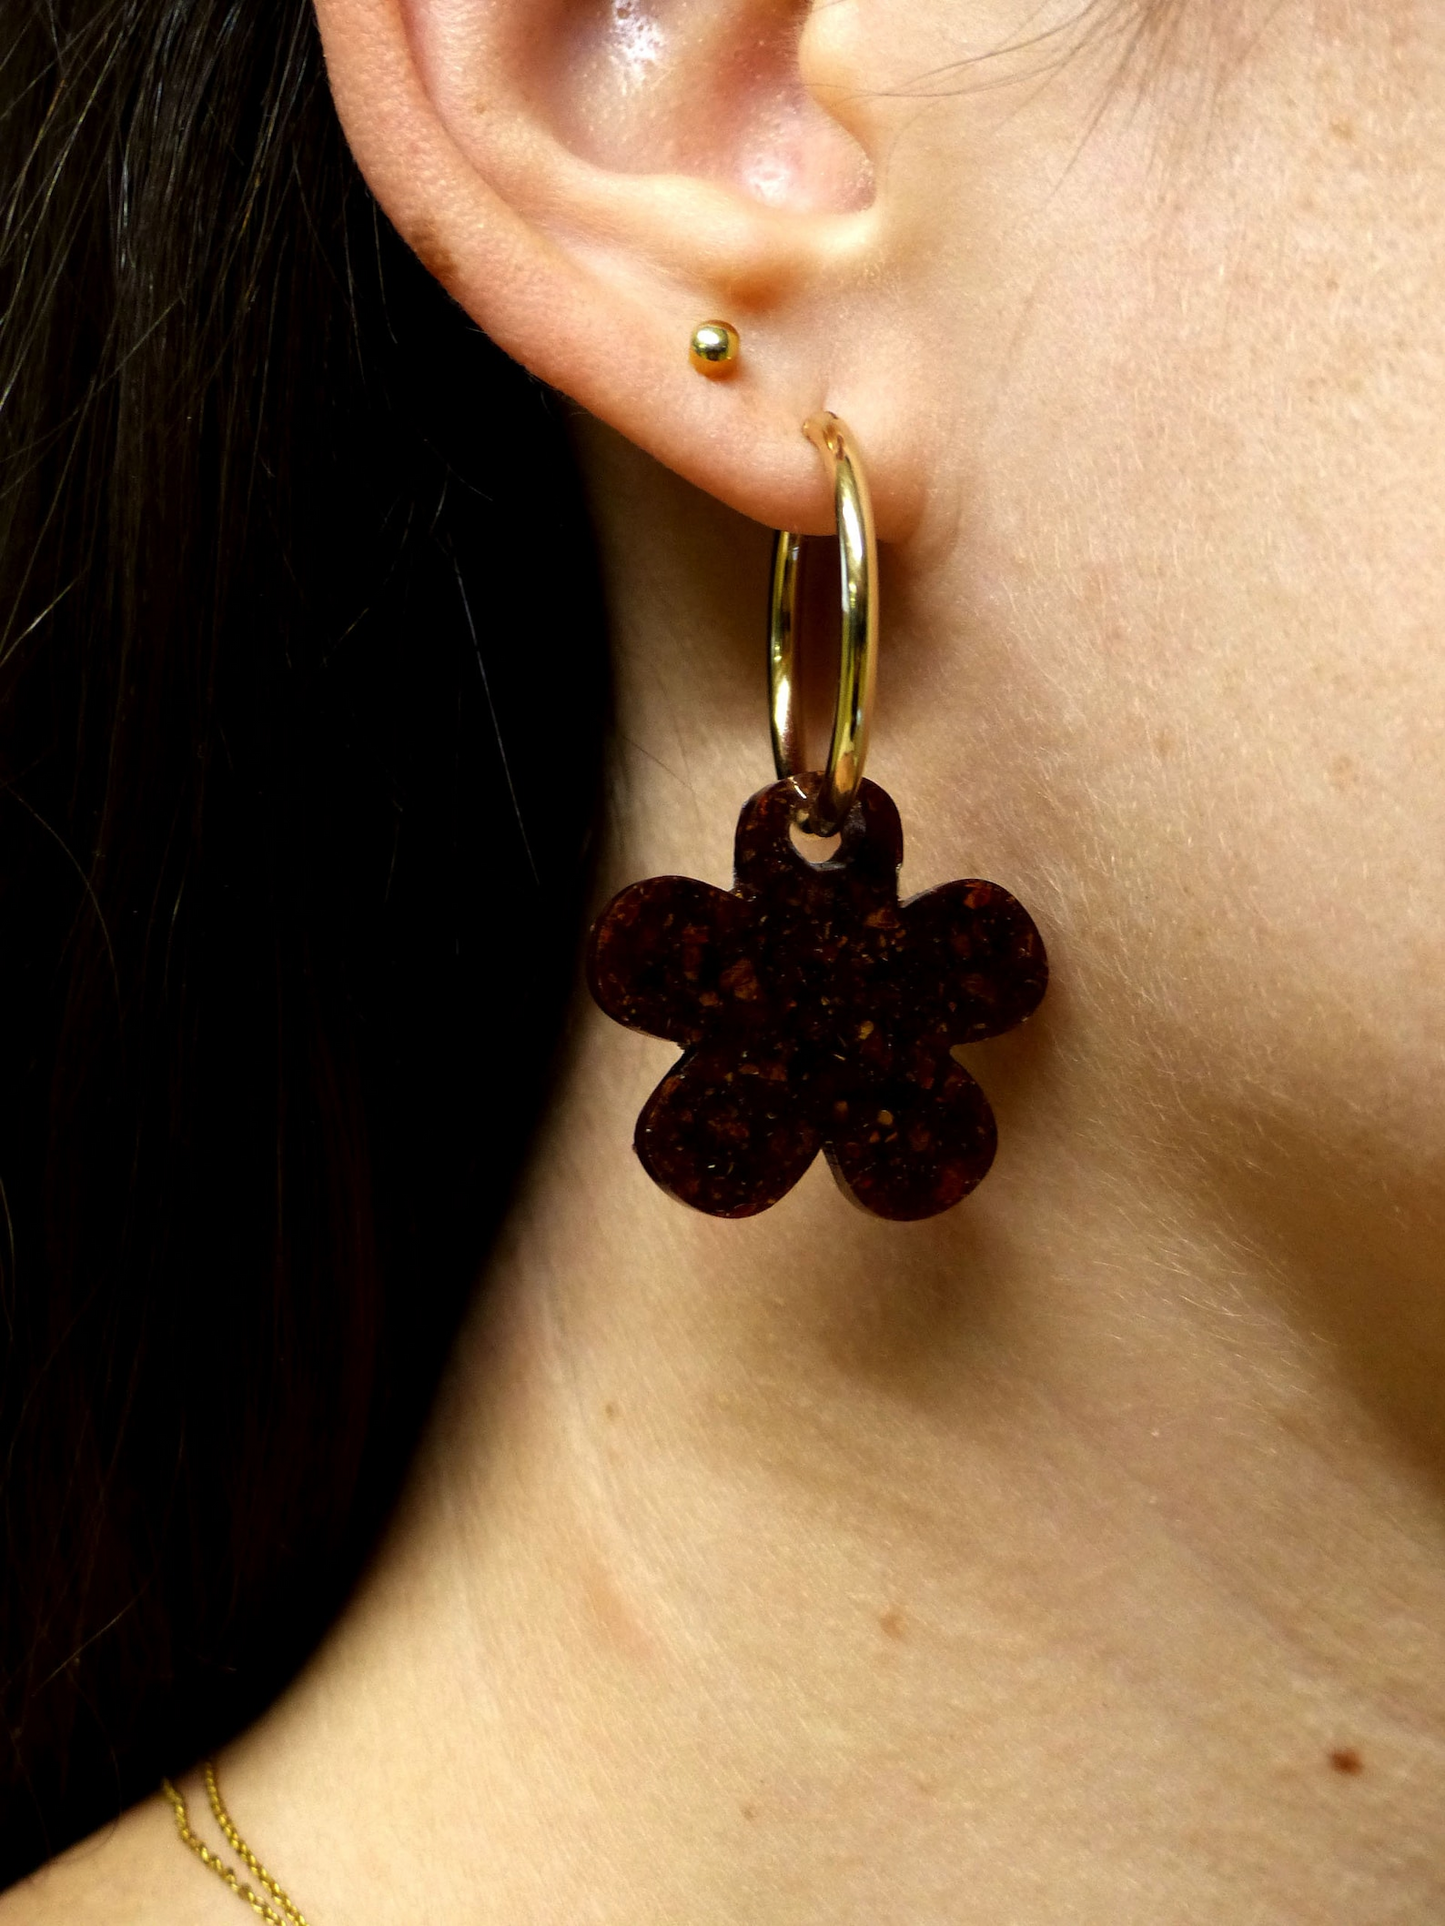 Boucle d’oreille créole grand format plaquée or et bijou fleur en matières upcyclées - Materialys